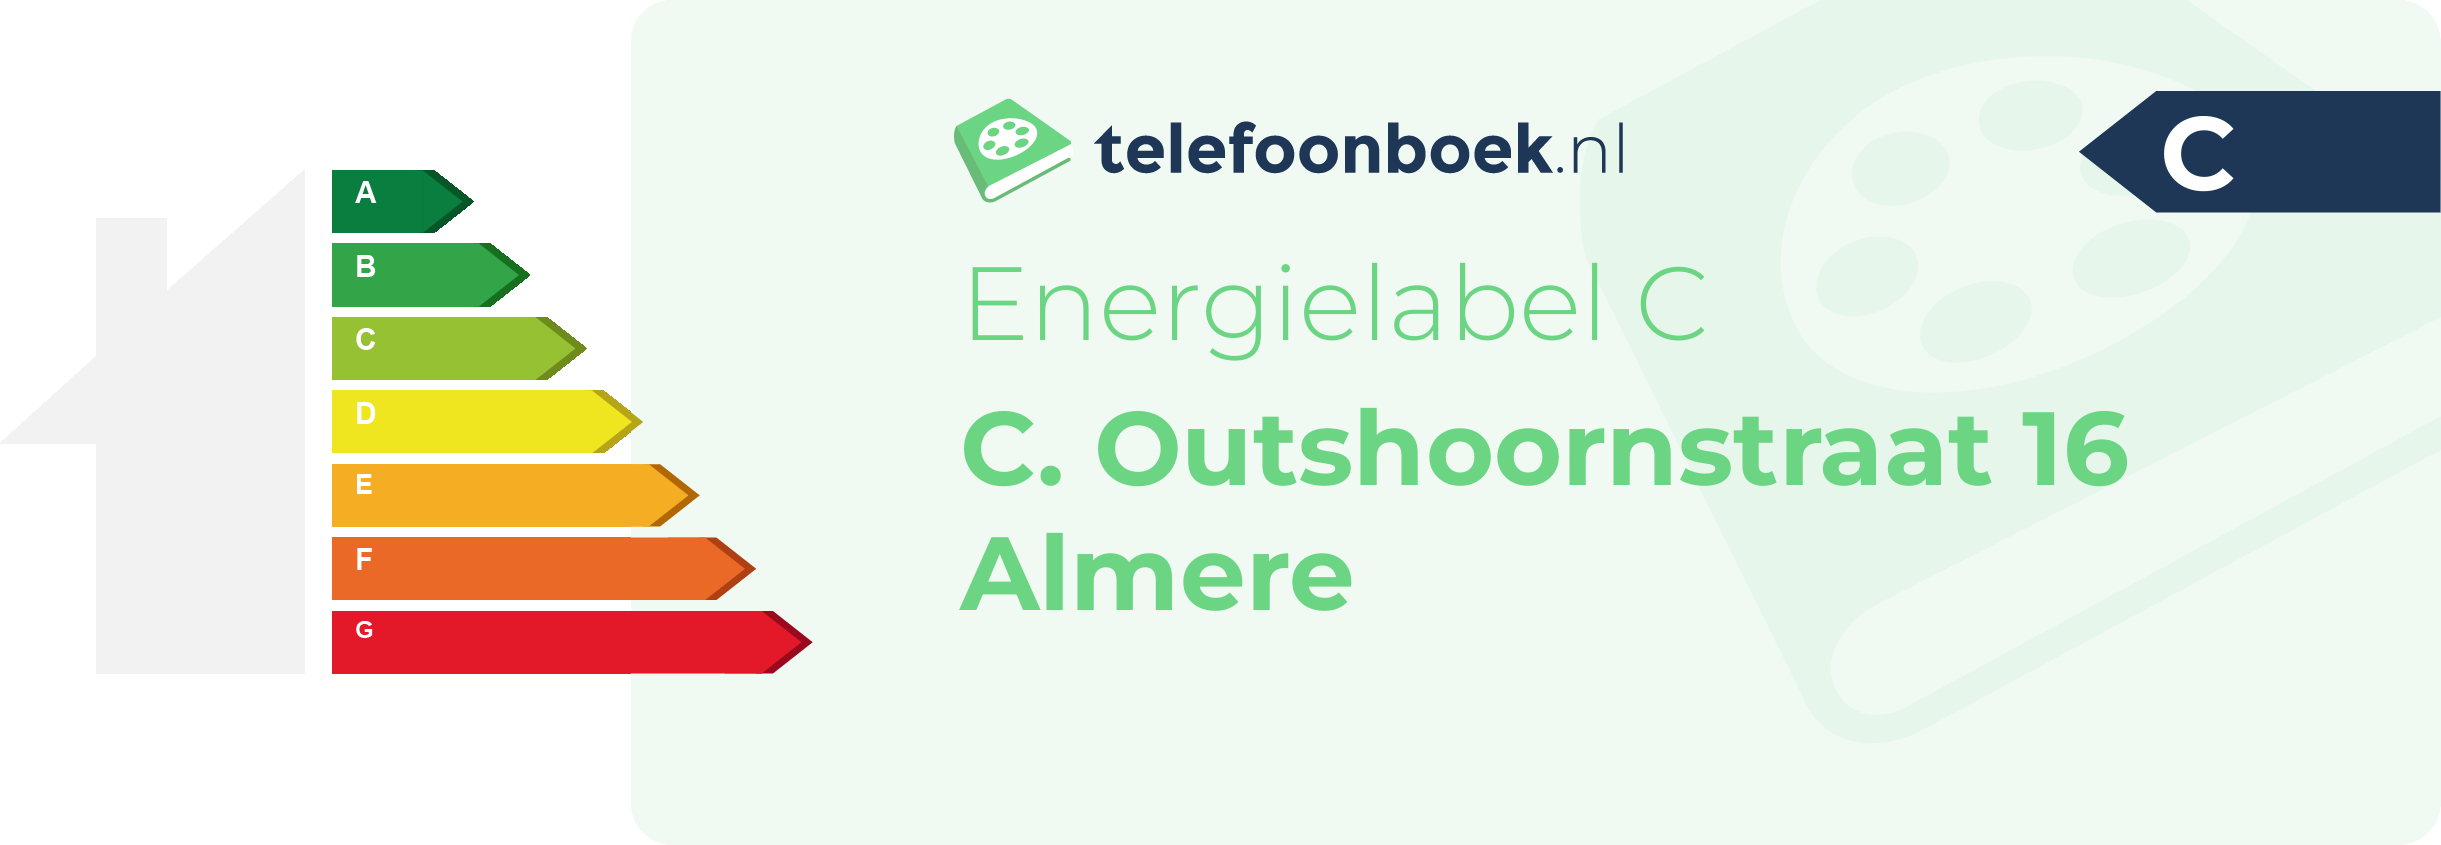 Energielabel C. Outshoornstraat 16 Almere